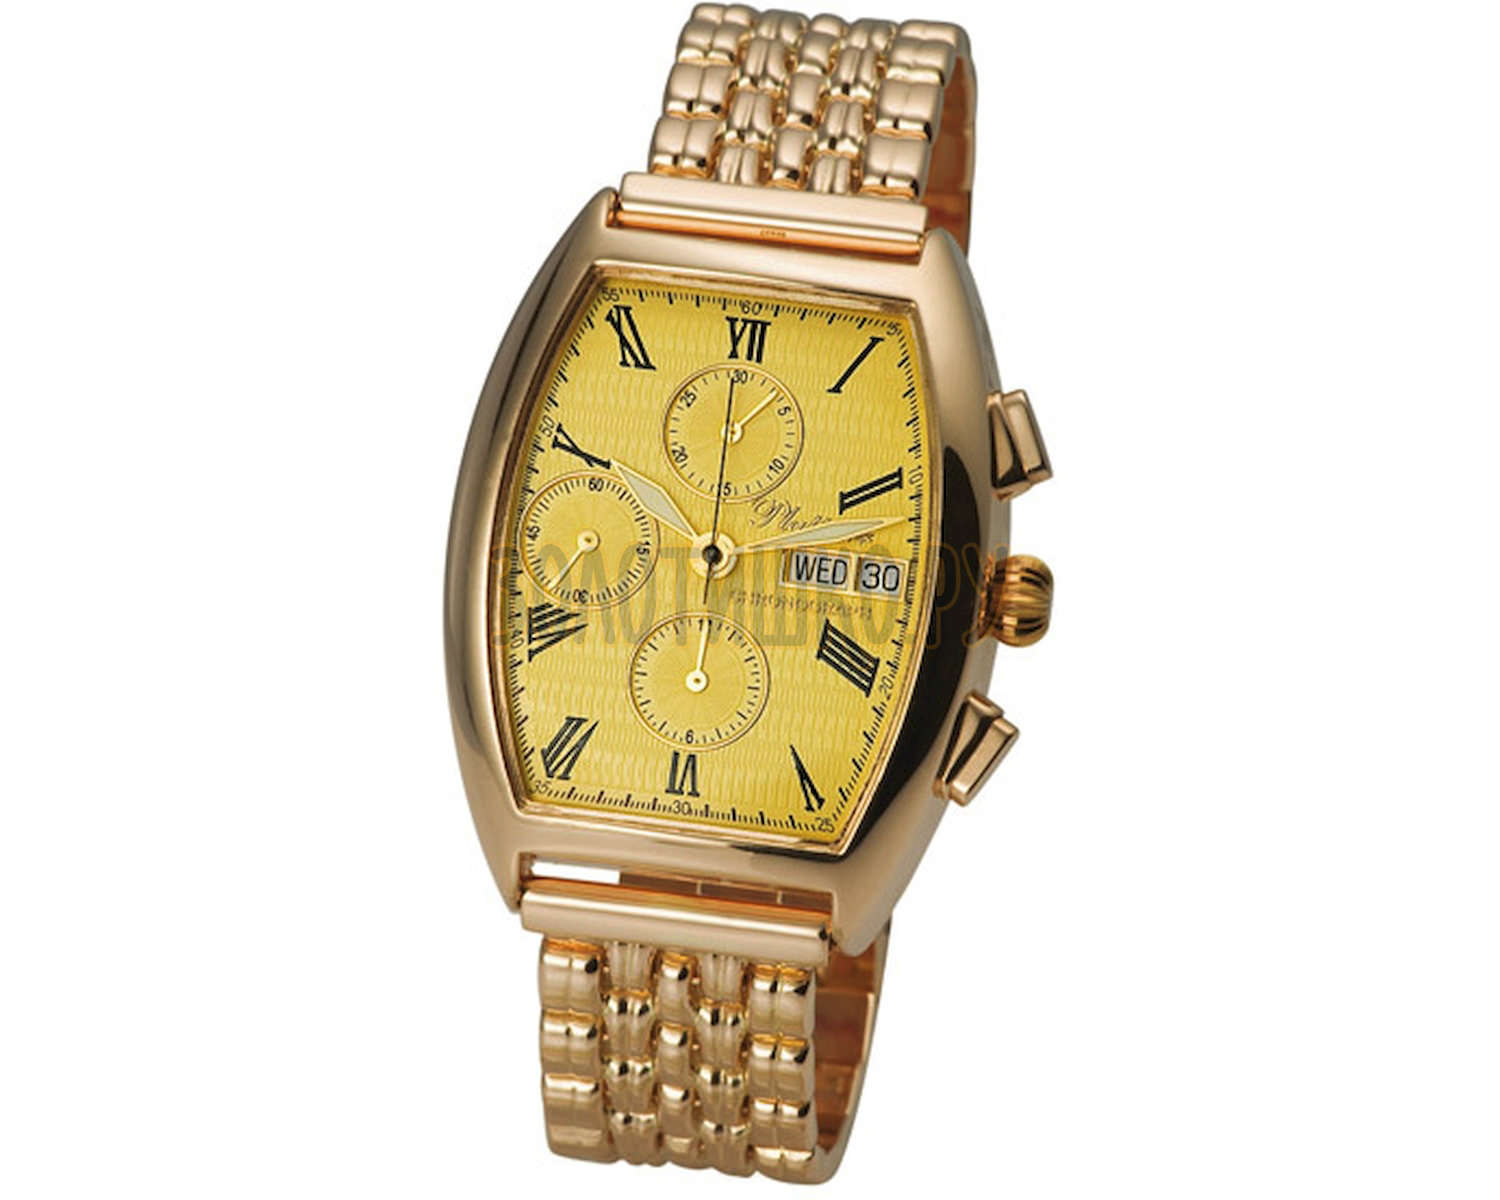 Фирма часов золотой час. Золотые часы Platinor мужские хронограф. Золотые часы 585 проба (1093.0.1.41a). Часы Платинор золотые мужские 585. Золотые часы Голд тайм модель 8020.